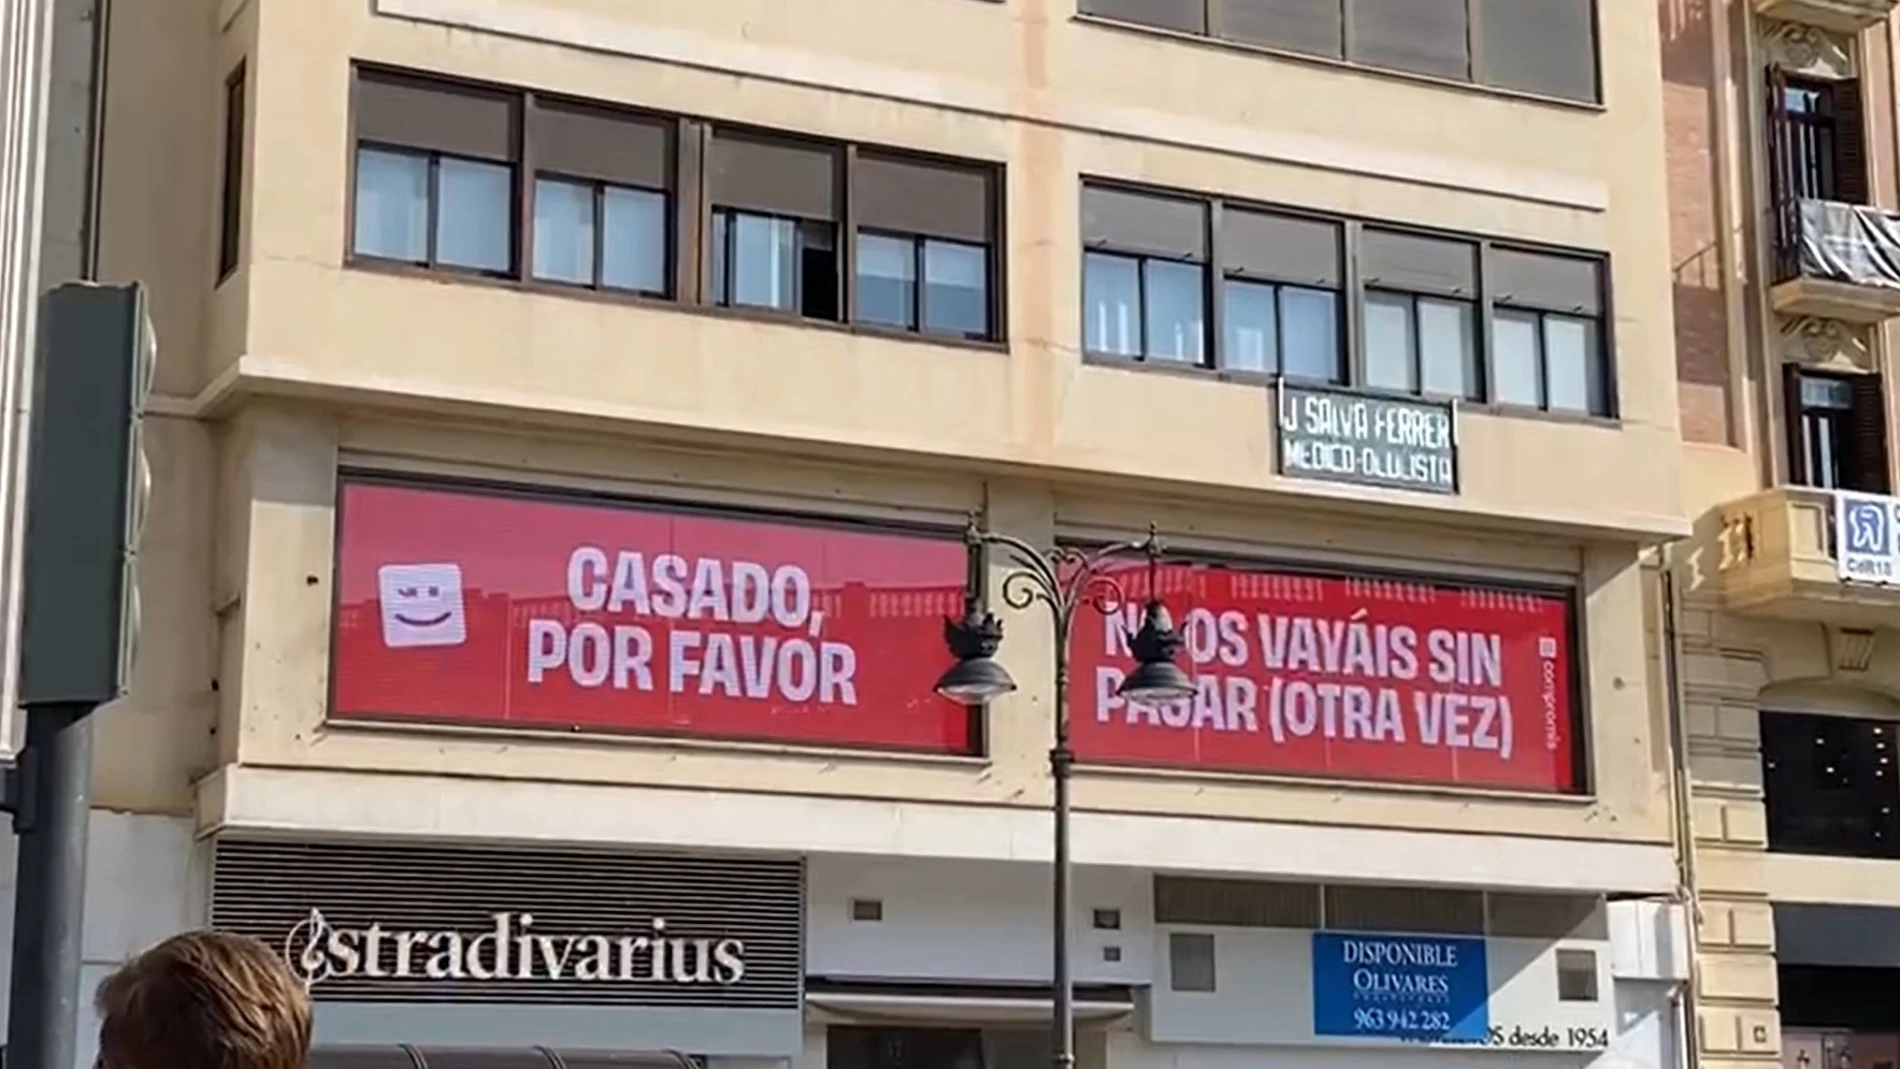 Compromís da la "bienvenida" al PP con un vídeo frente a la Plaza de Toros: "No os vayáis sin pagar (otra vez)"COMPROMÍS03/10/2021